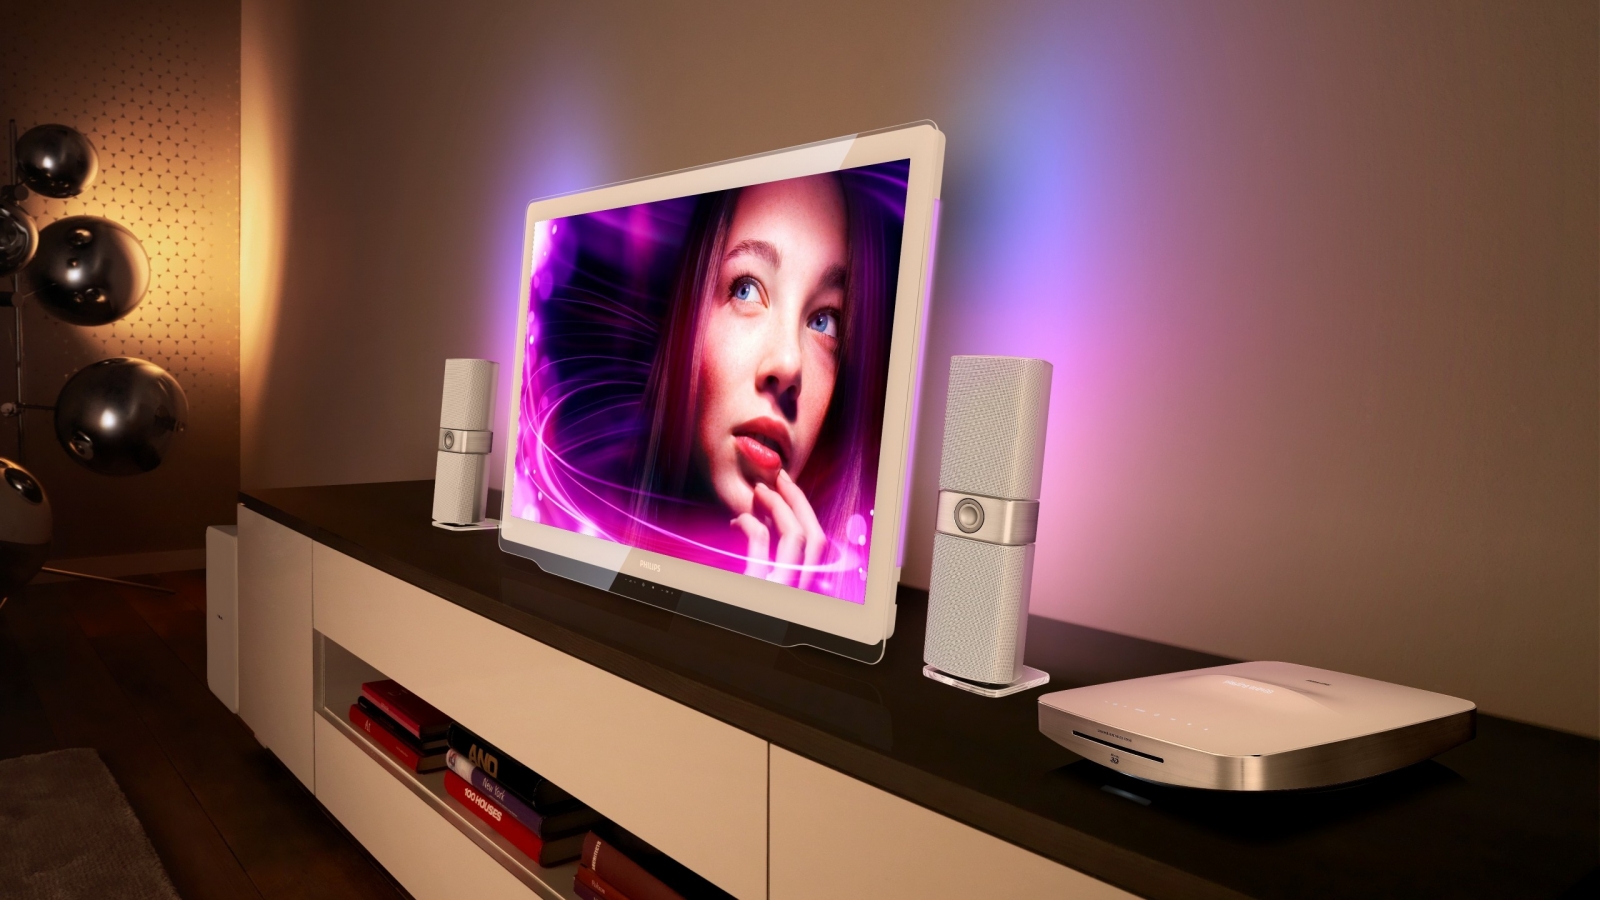 Philips DesignLine TV for 1600 x 900 HDTV resolution